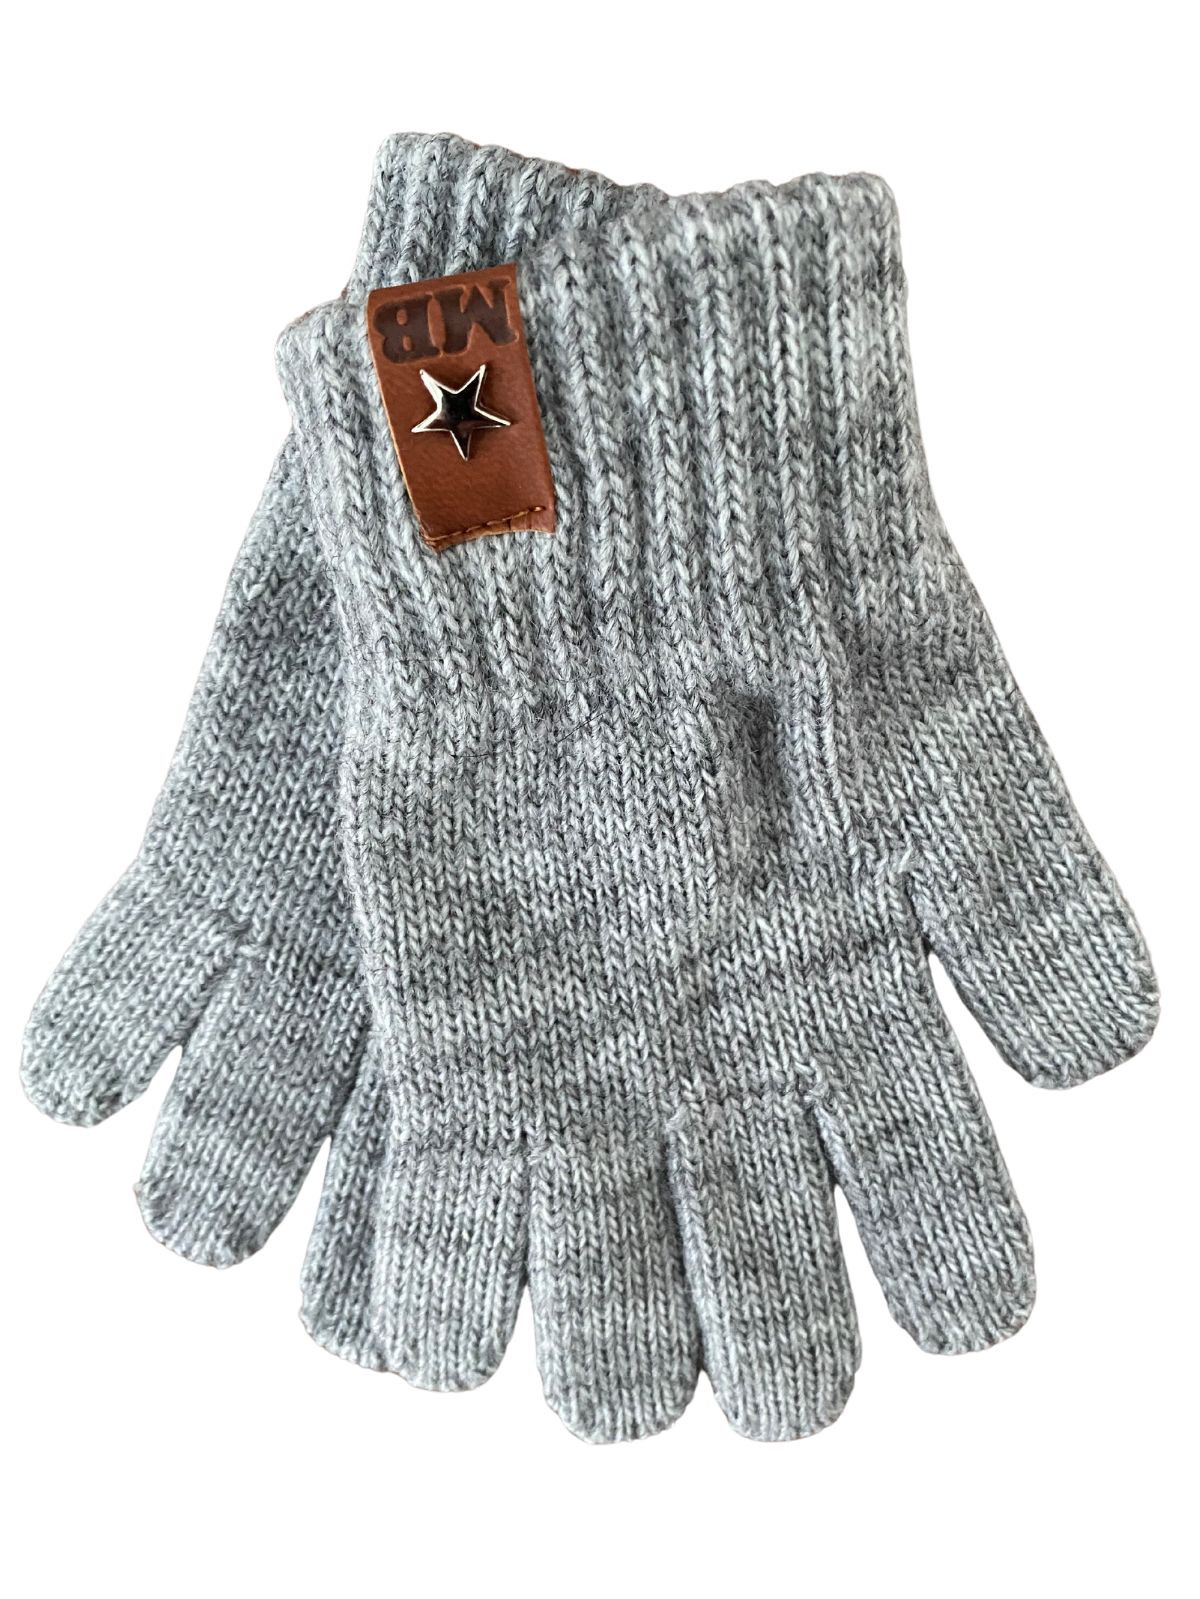 Gants tricotés pour enfant 2-4 ans, Ariel_gris